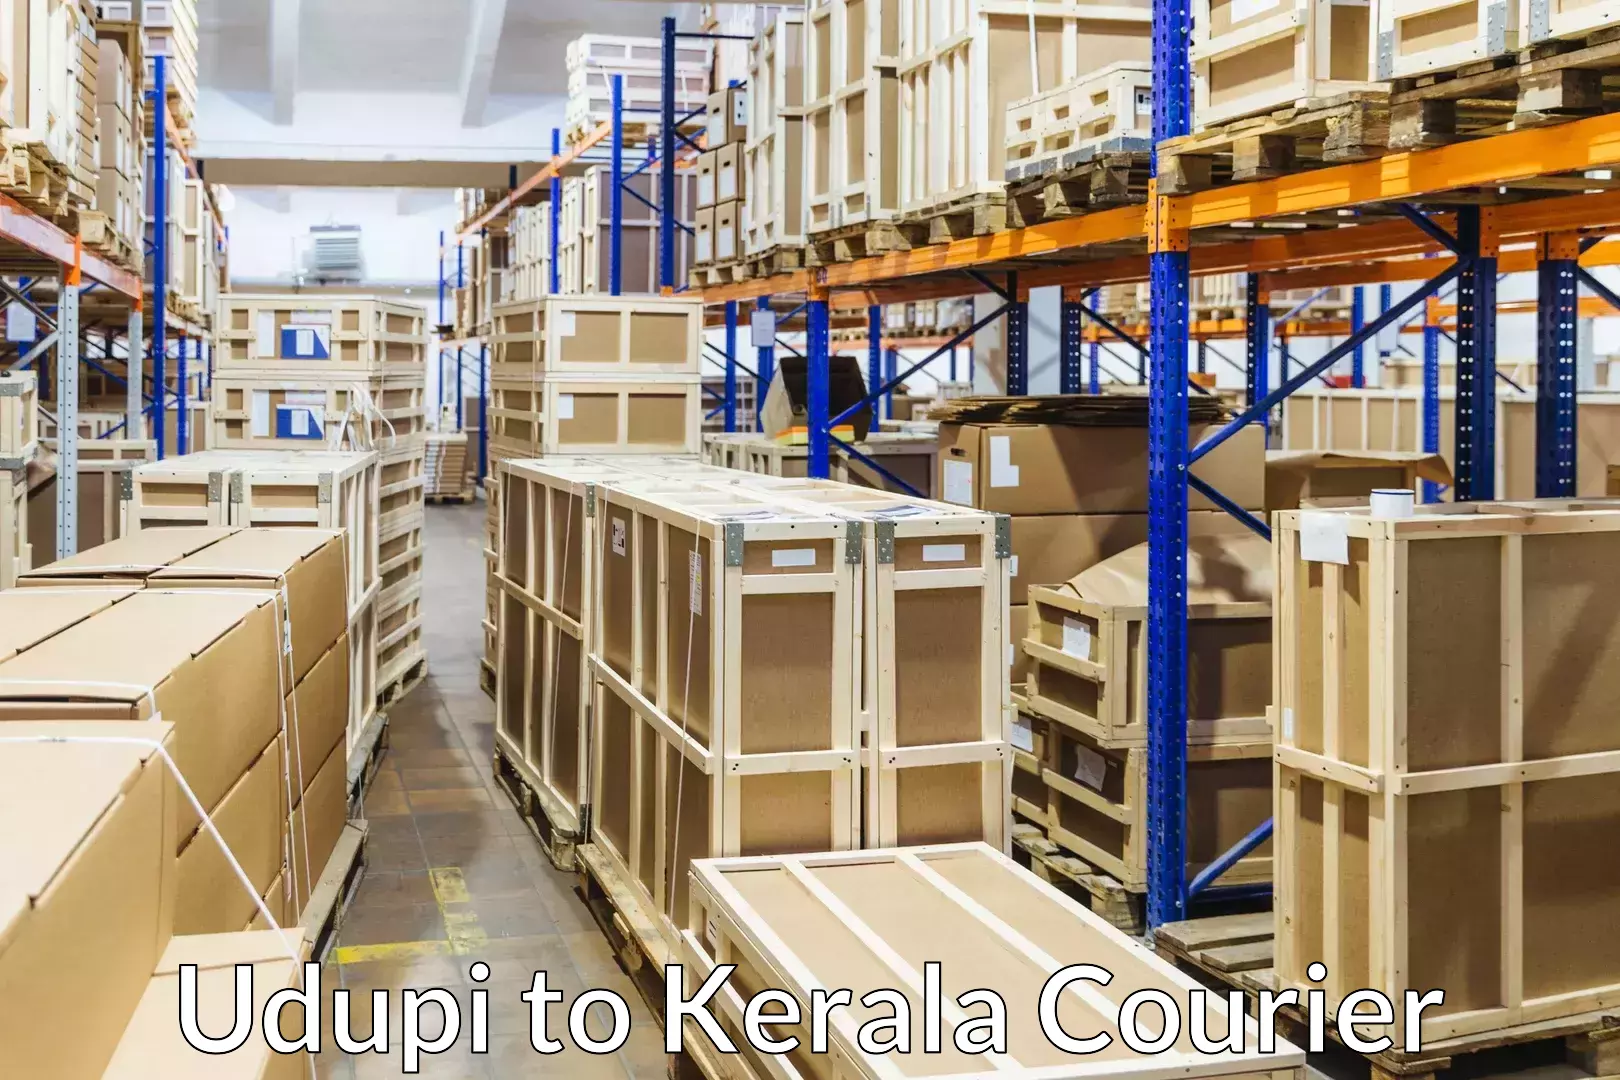 Reliable furniture transport Udupi to Neyyattinkara